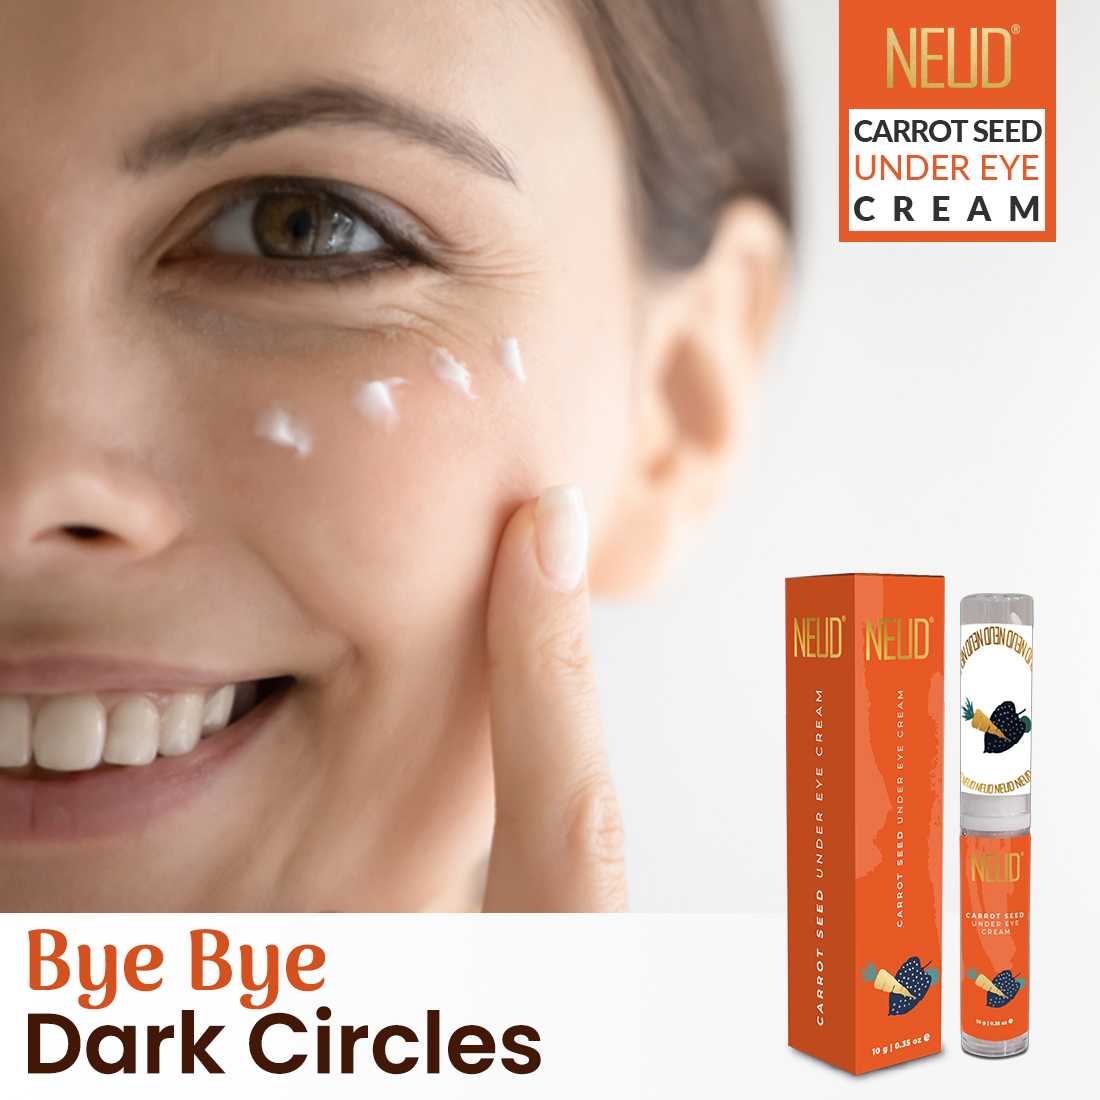 NEUD Carrot Seed Premium Under Eye Cream for Men & Women - 10g